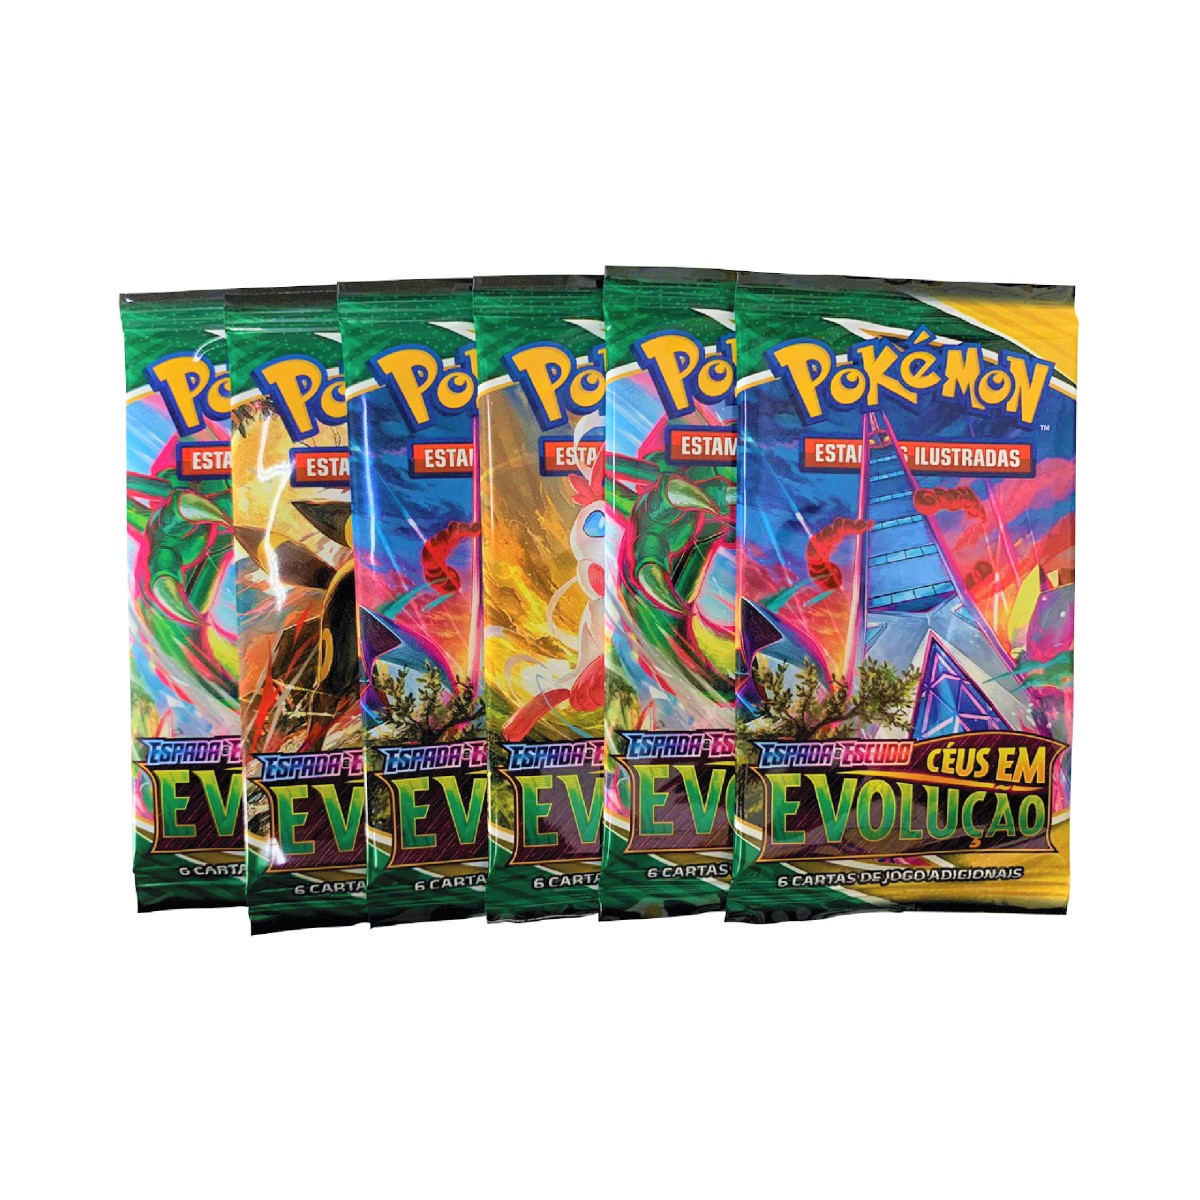 Pacote Cartas Pokémon Booster 6 Pacotes Espada Escudo Céus em Evolução 36 Cartas